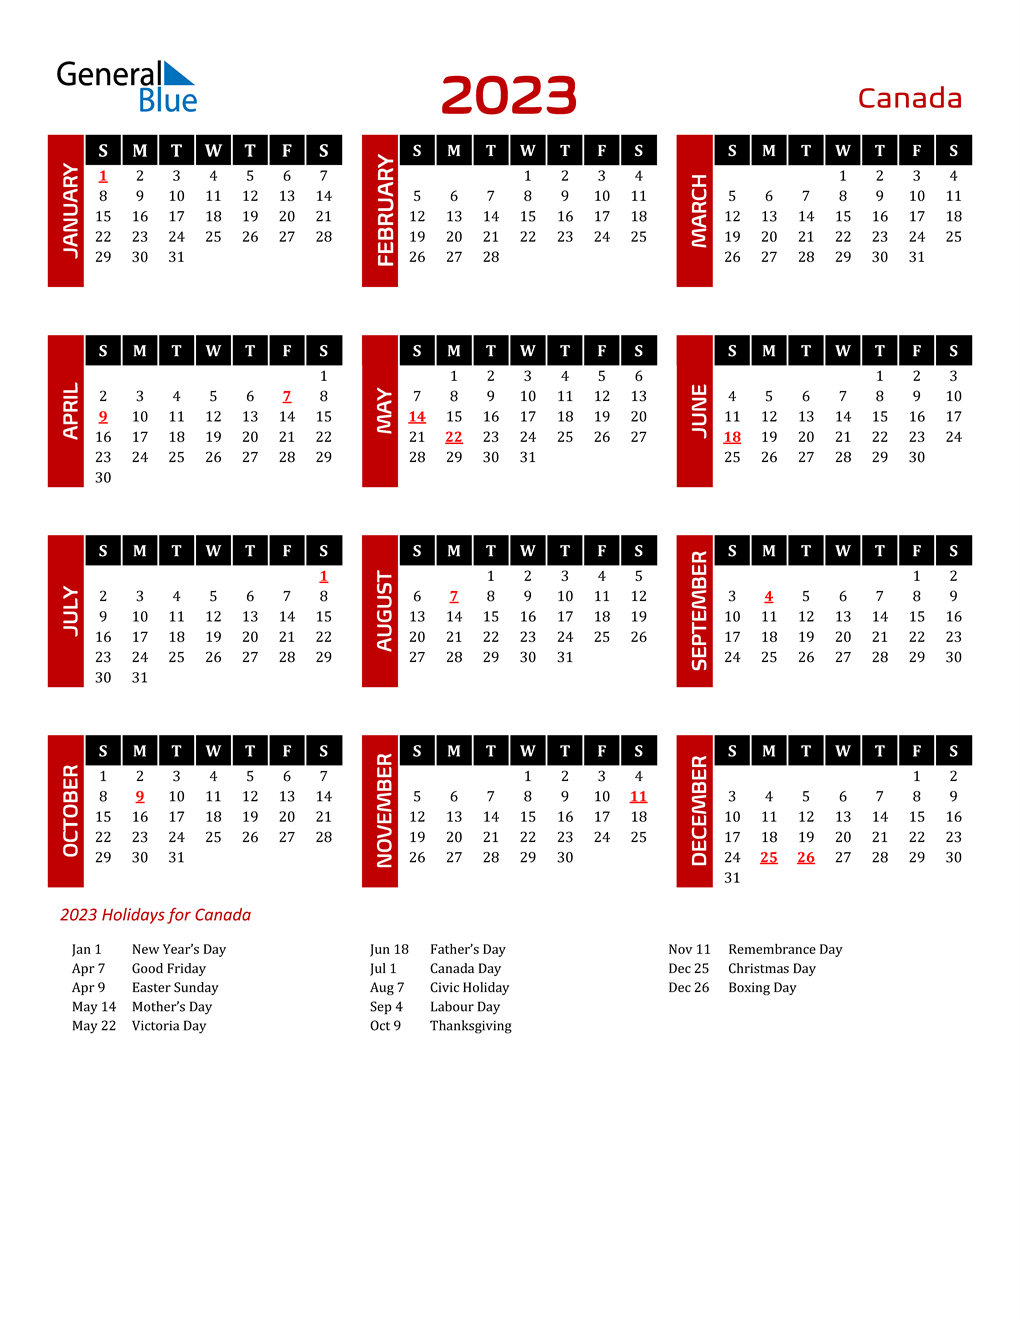 canada-2023-holidays-2023-calendar